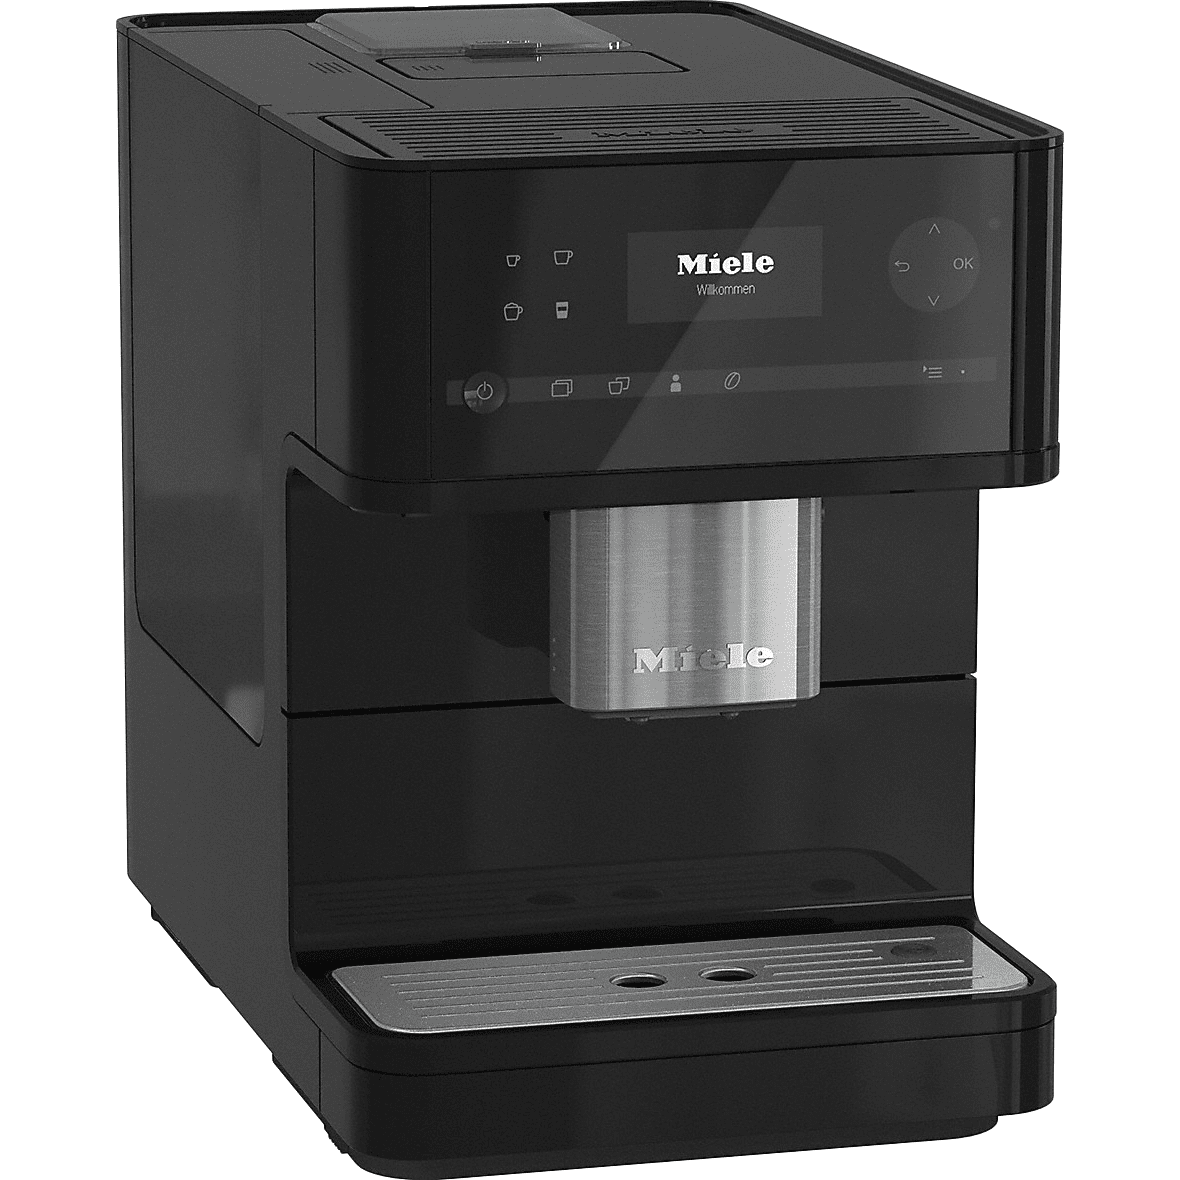 Miele Cm6150 Countertop Espresso Machine - Obsidian Black